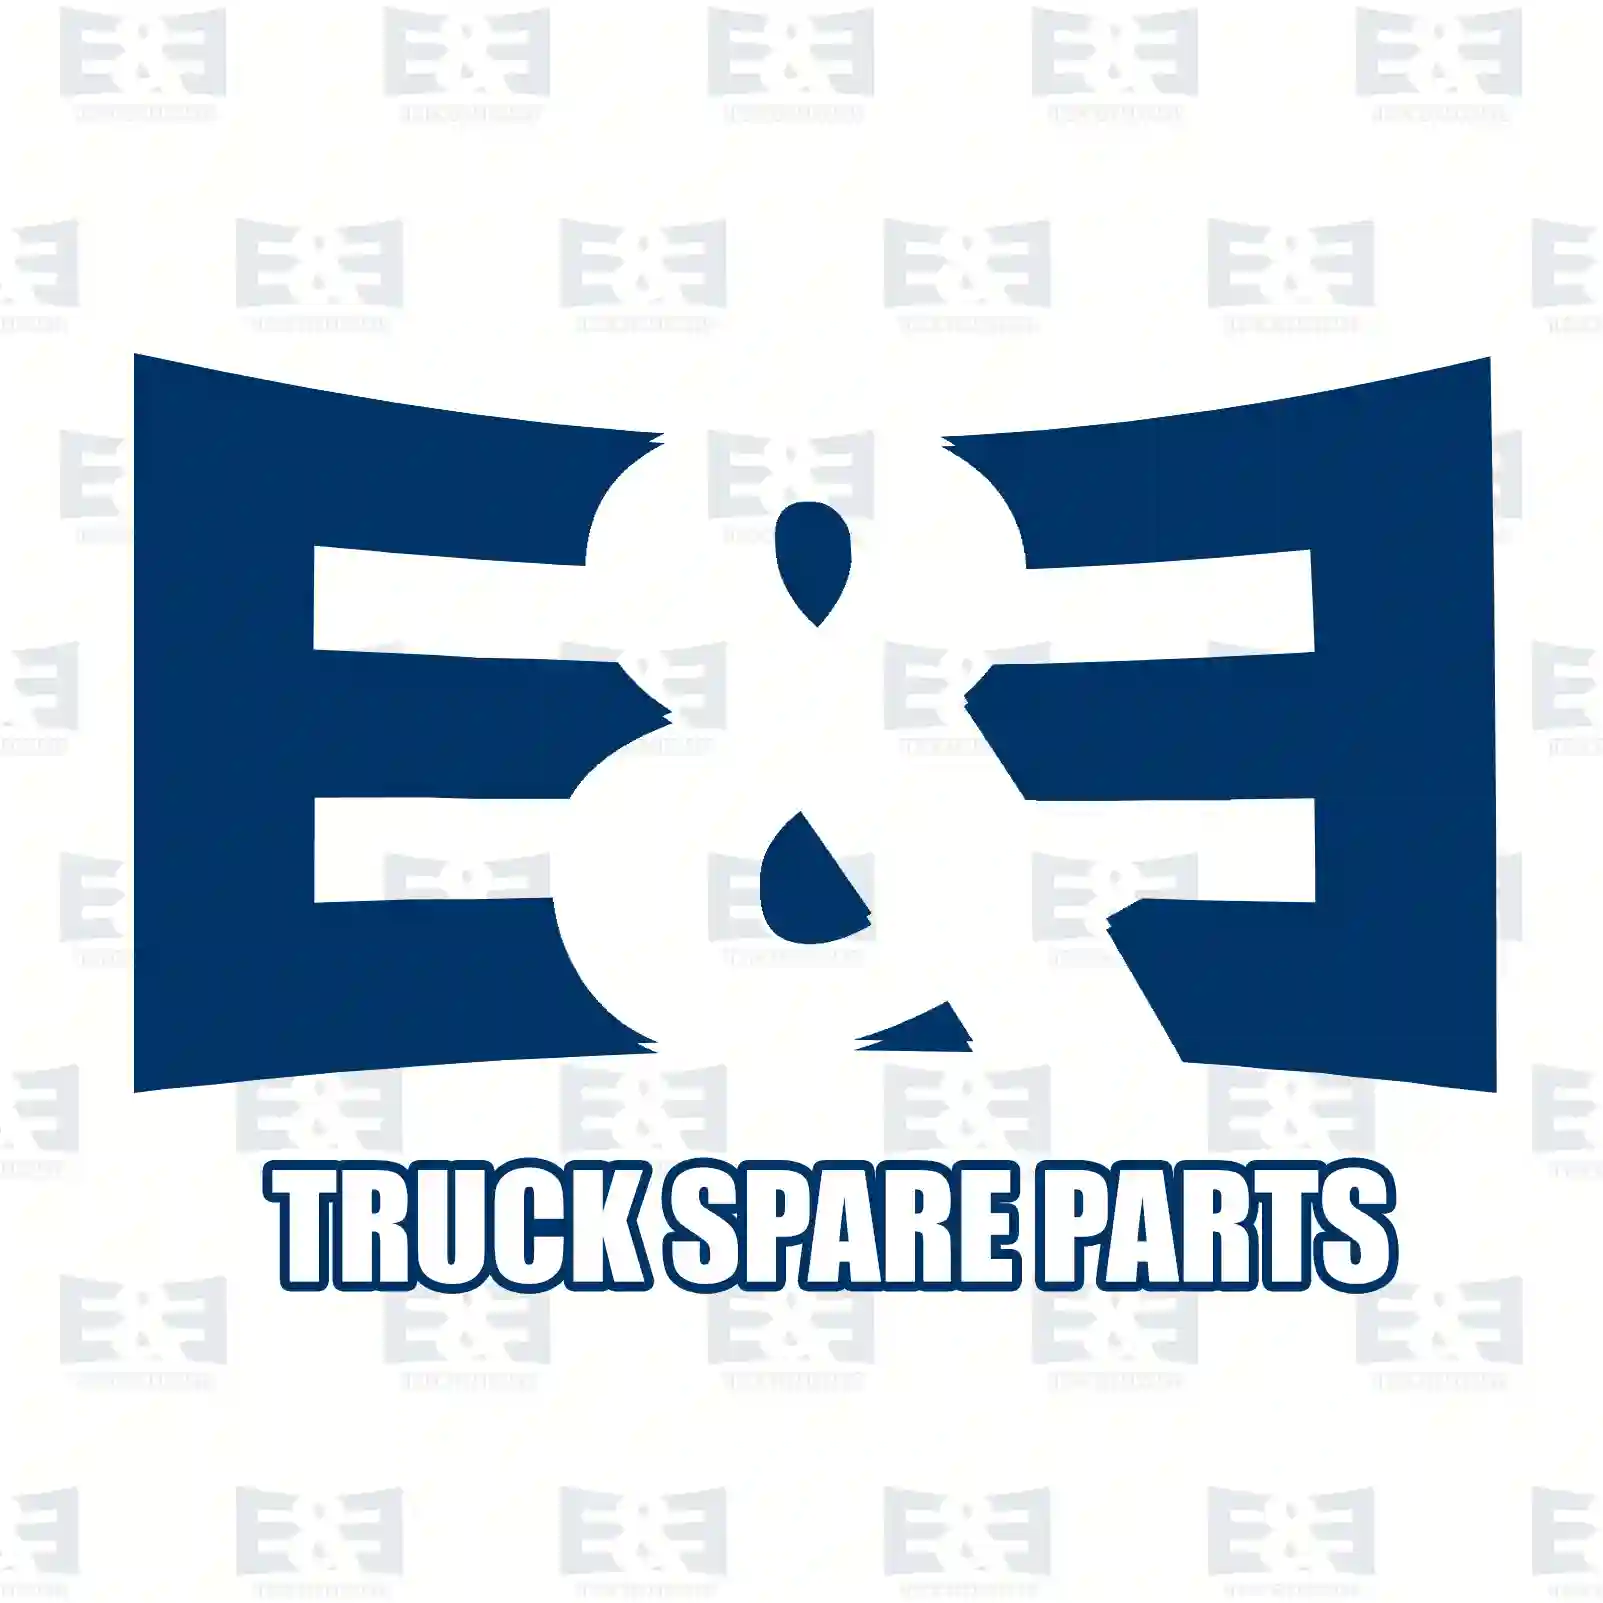 Aluminium washer, 2E2286292, 35456, 812412, ZG40181-0008, , , ||  2E2286292 E&E Truck Spare Parts | Truck Spare Parts, Auotomotive Spare Parts Aluminium washer, 2E2286292, 35456, 812412, ZG40181-0008, , , ||  2E2286292 E&E Truck Spare Parts | Truck Spare Parts, Auotomotive Spare Parts